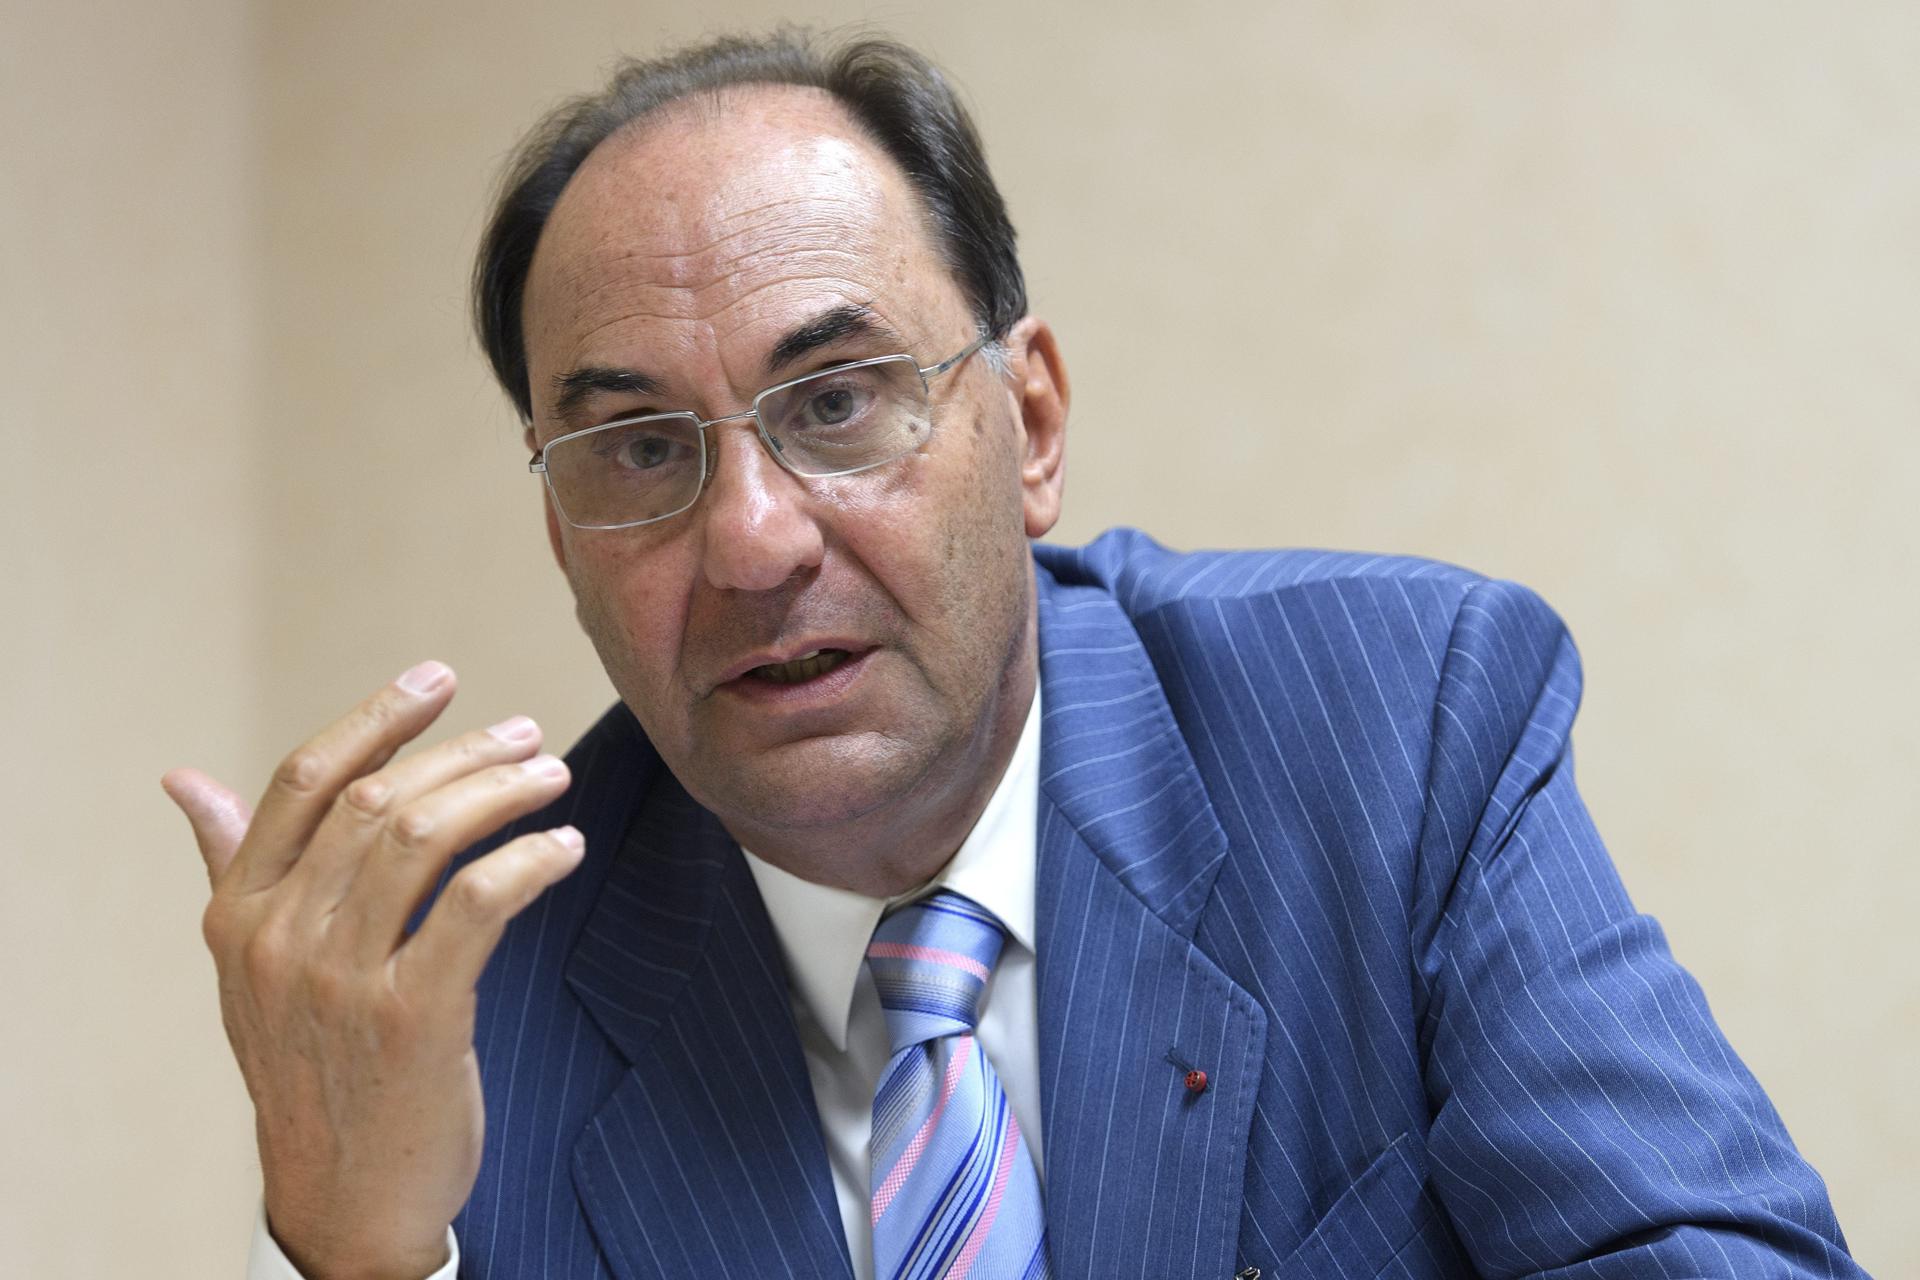 (FILE) The former Spanish MEP, Alejo Vidal-Quadras, speaks during a press conference in Geneva, Switzerland, 02 September 2016. EFE/Martial Trezzini